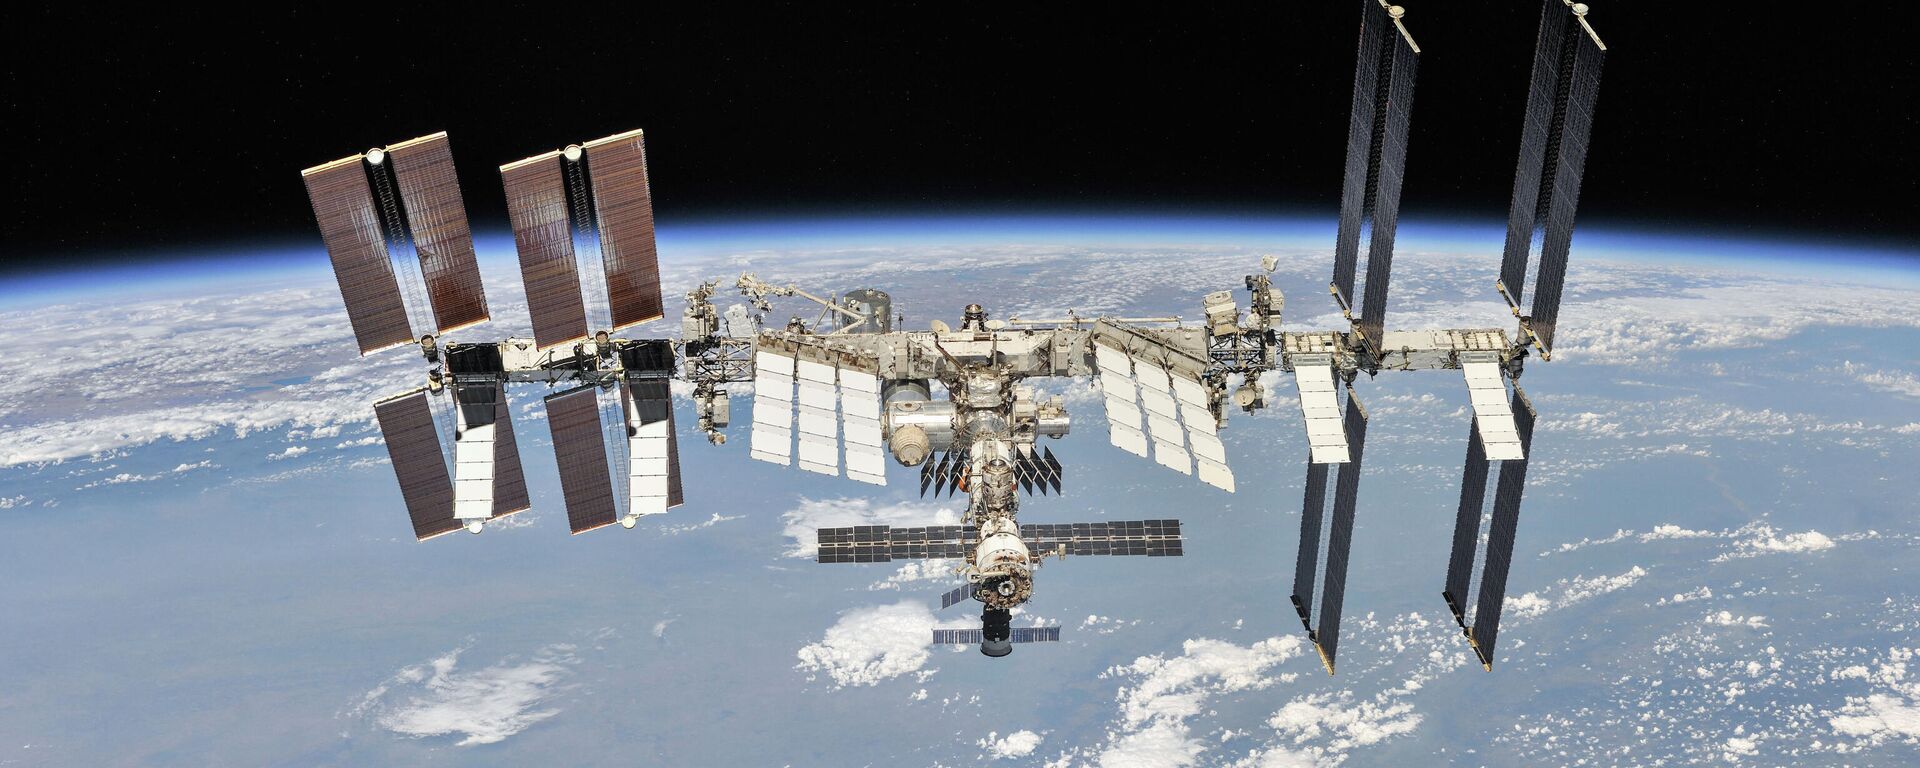 Международная космическая станция, сфотографированная членами экипажа 56-й экспедиции с космического корабля «Союз», 4 октября 2018 года - Sputnik Азербайджан, 1920, 09.09.2023